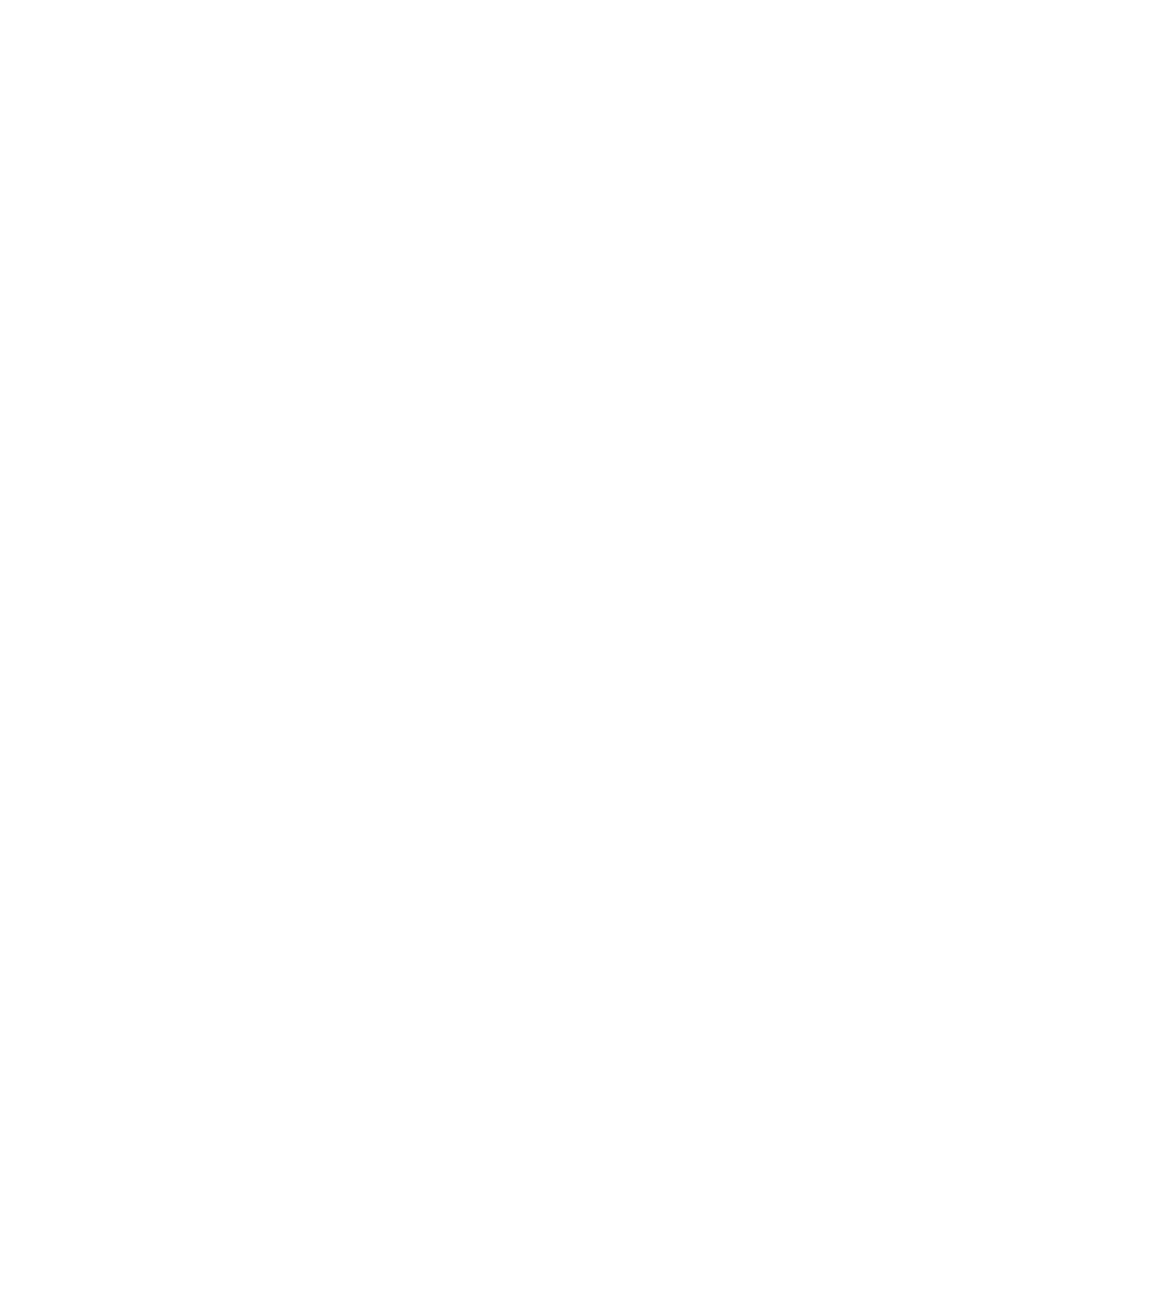 Take Back the Night logo